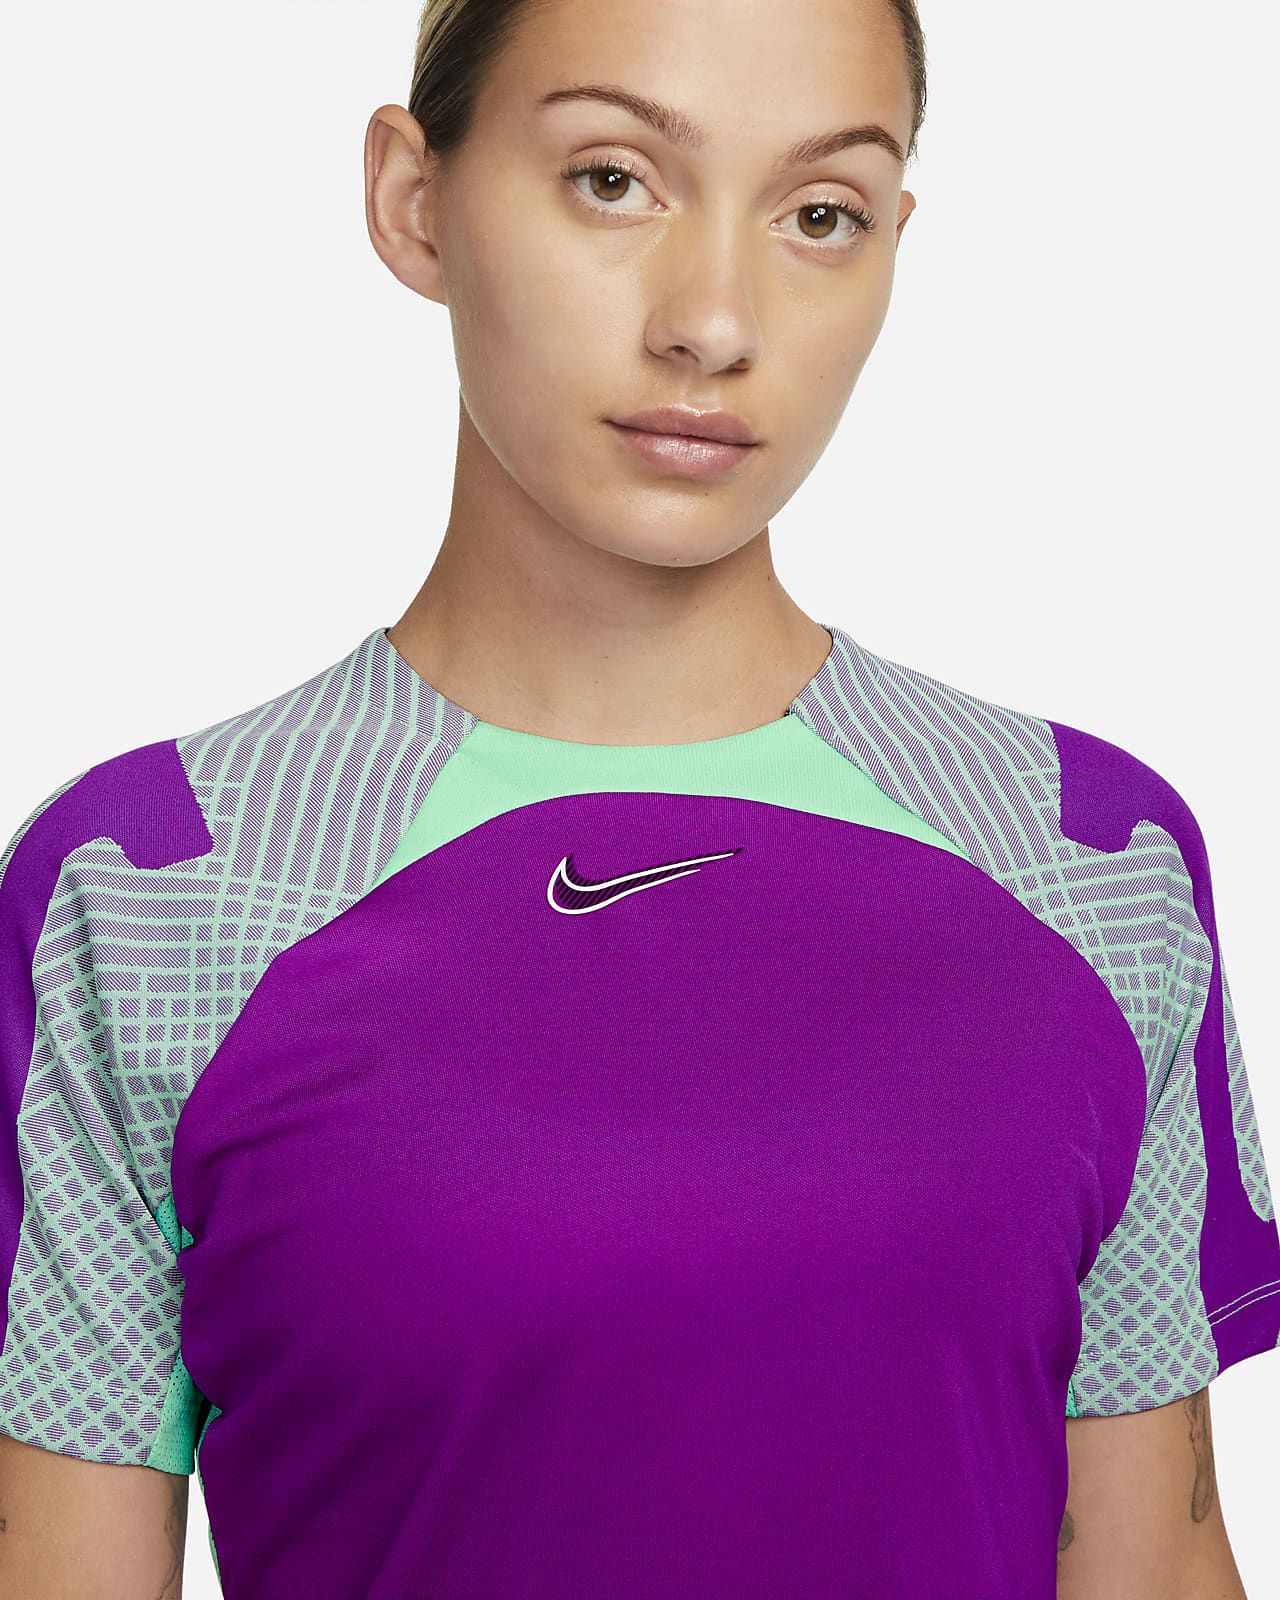 Camiseta de fútbol mujer Strike. Nike.com